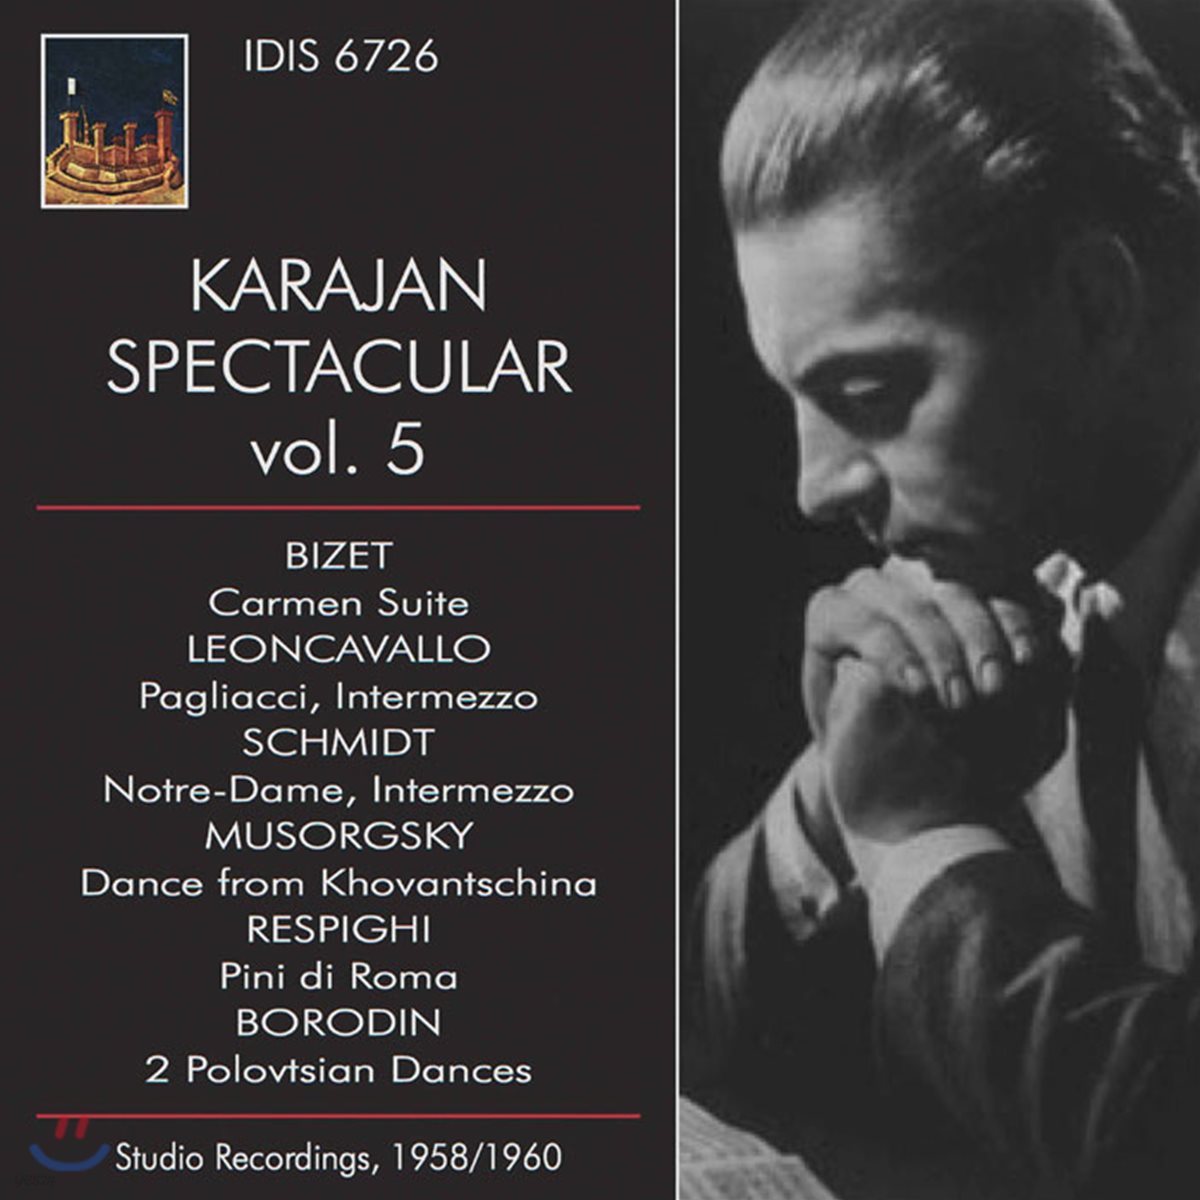 Herbert von Karajan 비제: 카르멘 모음곡 / 보로딘: 폴로베츠인의 춤 (Karajan Spectacular Vol. 5)